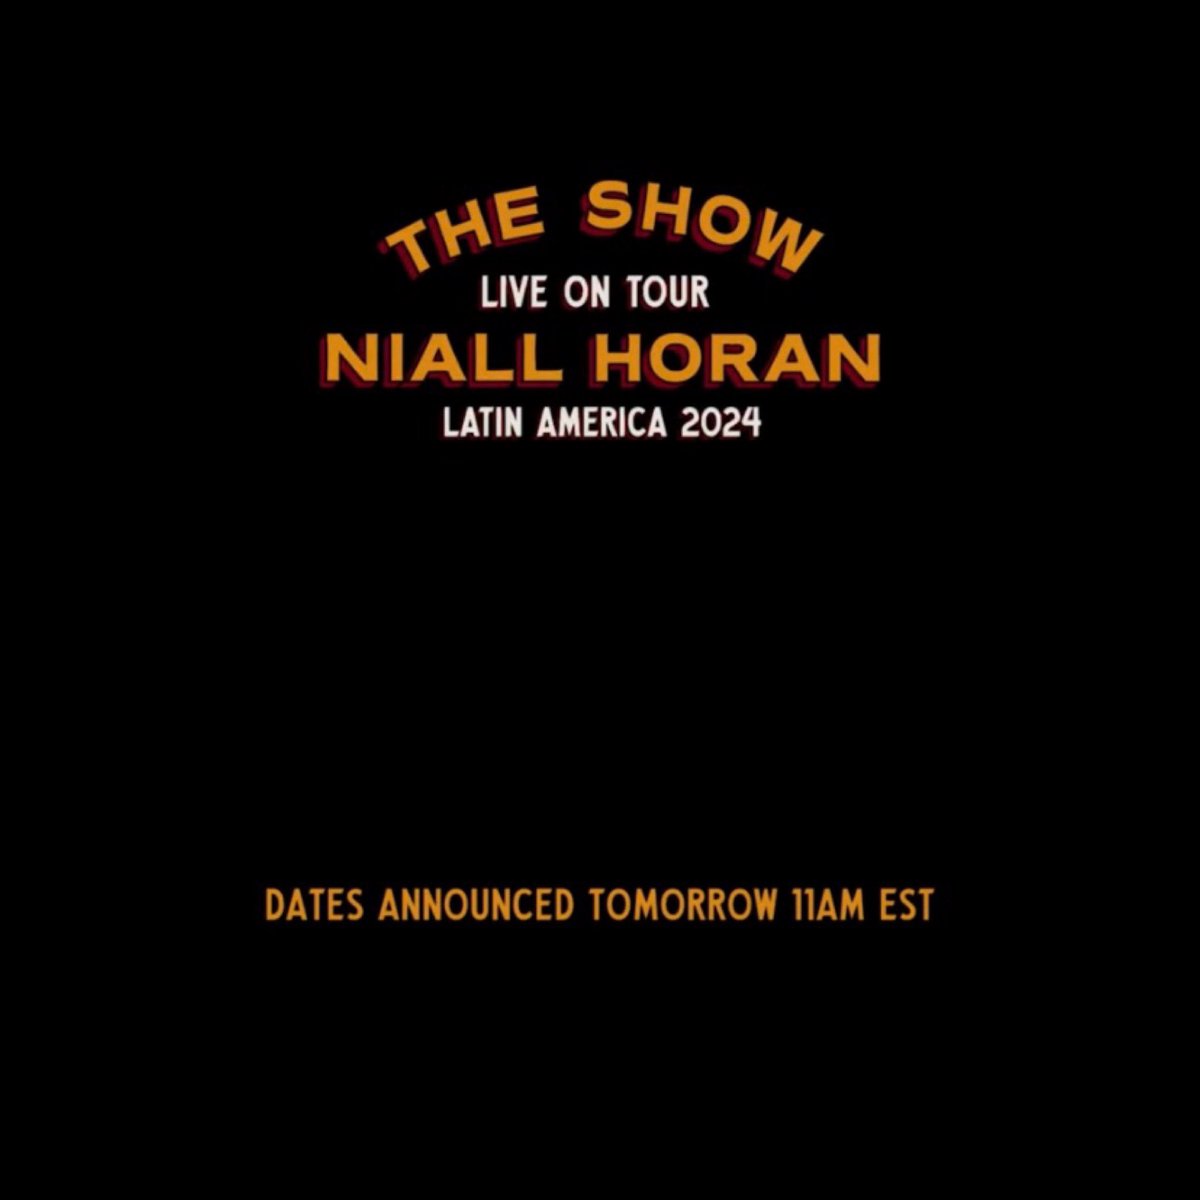 THE SHOW LIVE ON TOUR: LATIN AMERICA. Niall Horan anuncia MAÑANA las fechas de TSLOT para Latinoamérica 💃🏻. — HORARIOS: 🇲🇽🇨🇷🇸🇻🇬🇹🇭🇳🇳🇮: 10:00am 🇨🇴🇨🇺🇪🇨🇵🇦🇵🇪: 11:00am 🇧🇴🇩🇴🇻🇪: 12:00pm (medio día) 🇦🇷🇧🇷🇺🇾🇨🇱🇵🇾: 1:00pm